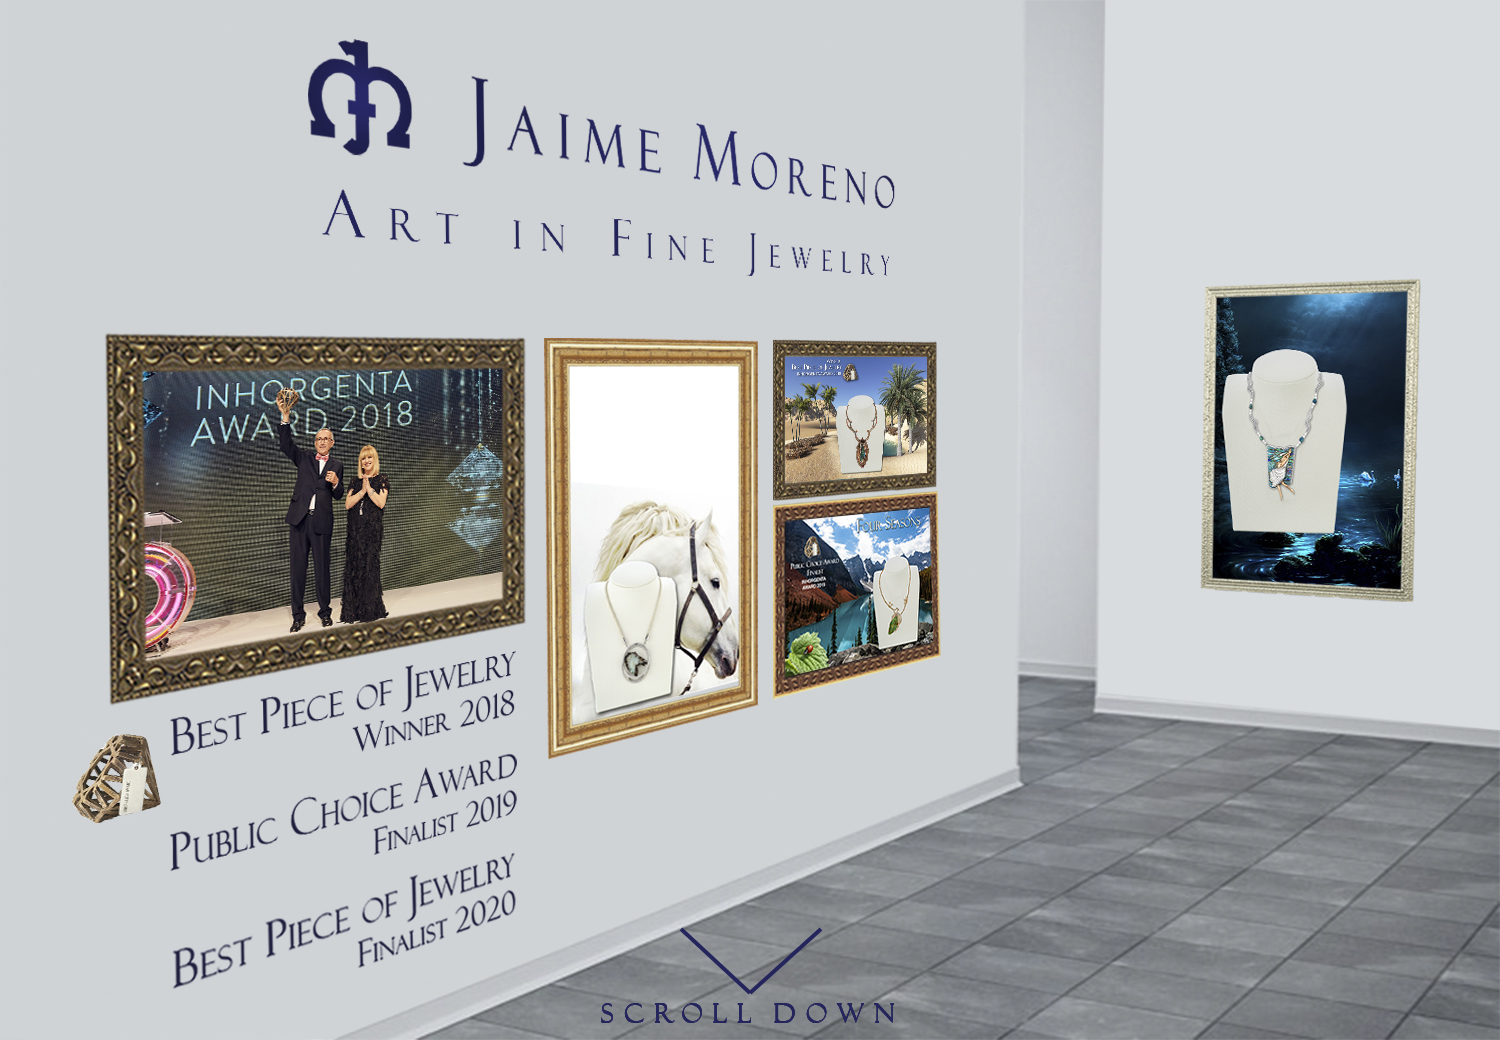 Jaime-Moreno-Art-in-Jewelry-Spanish-Luxury-Fine-Jewelry-2020-2019-2018-Inhorgenta-Award-Trophy-Prize